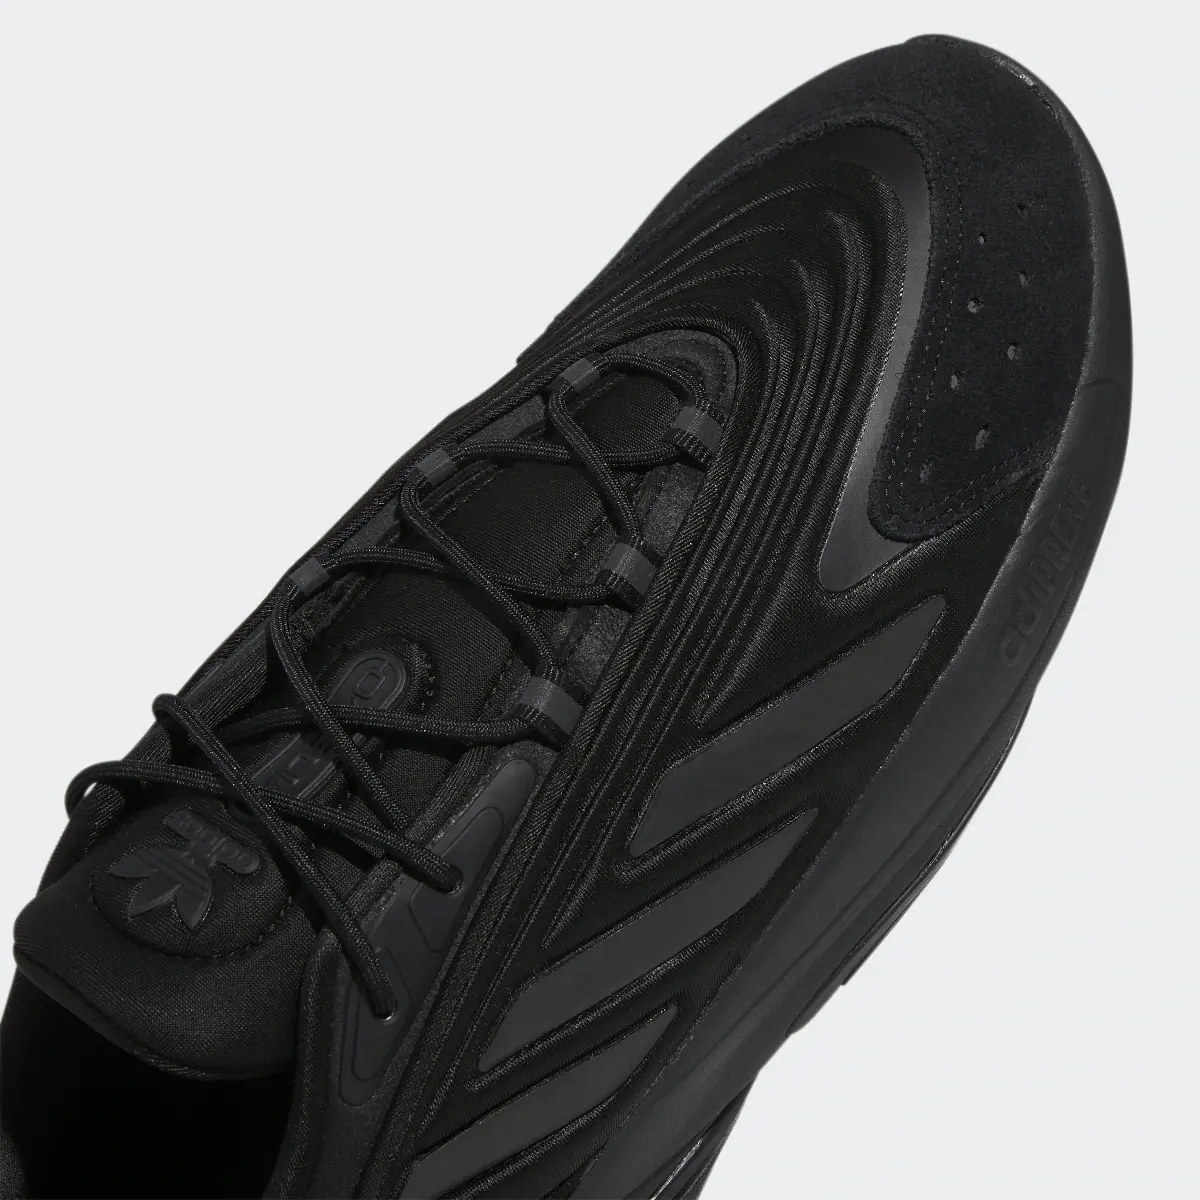 Adidas Ozelia Ayakkabı. 3